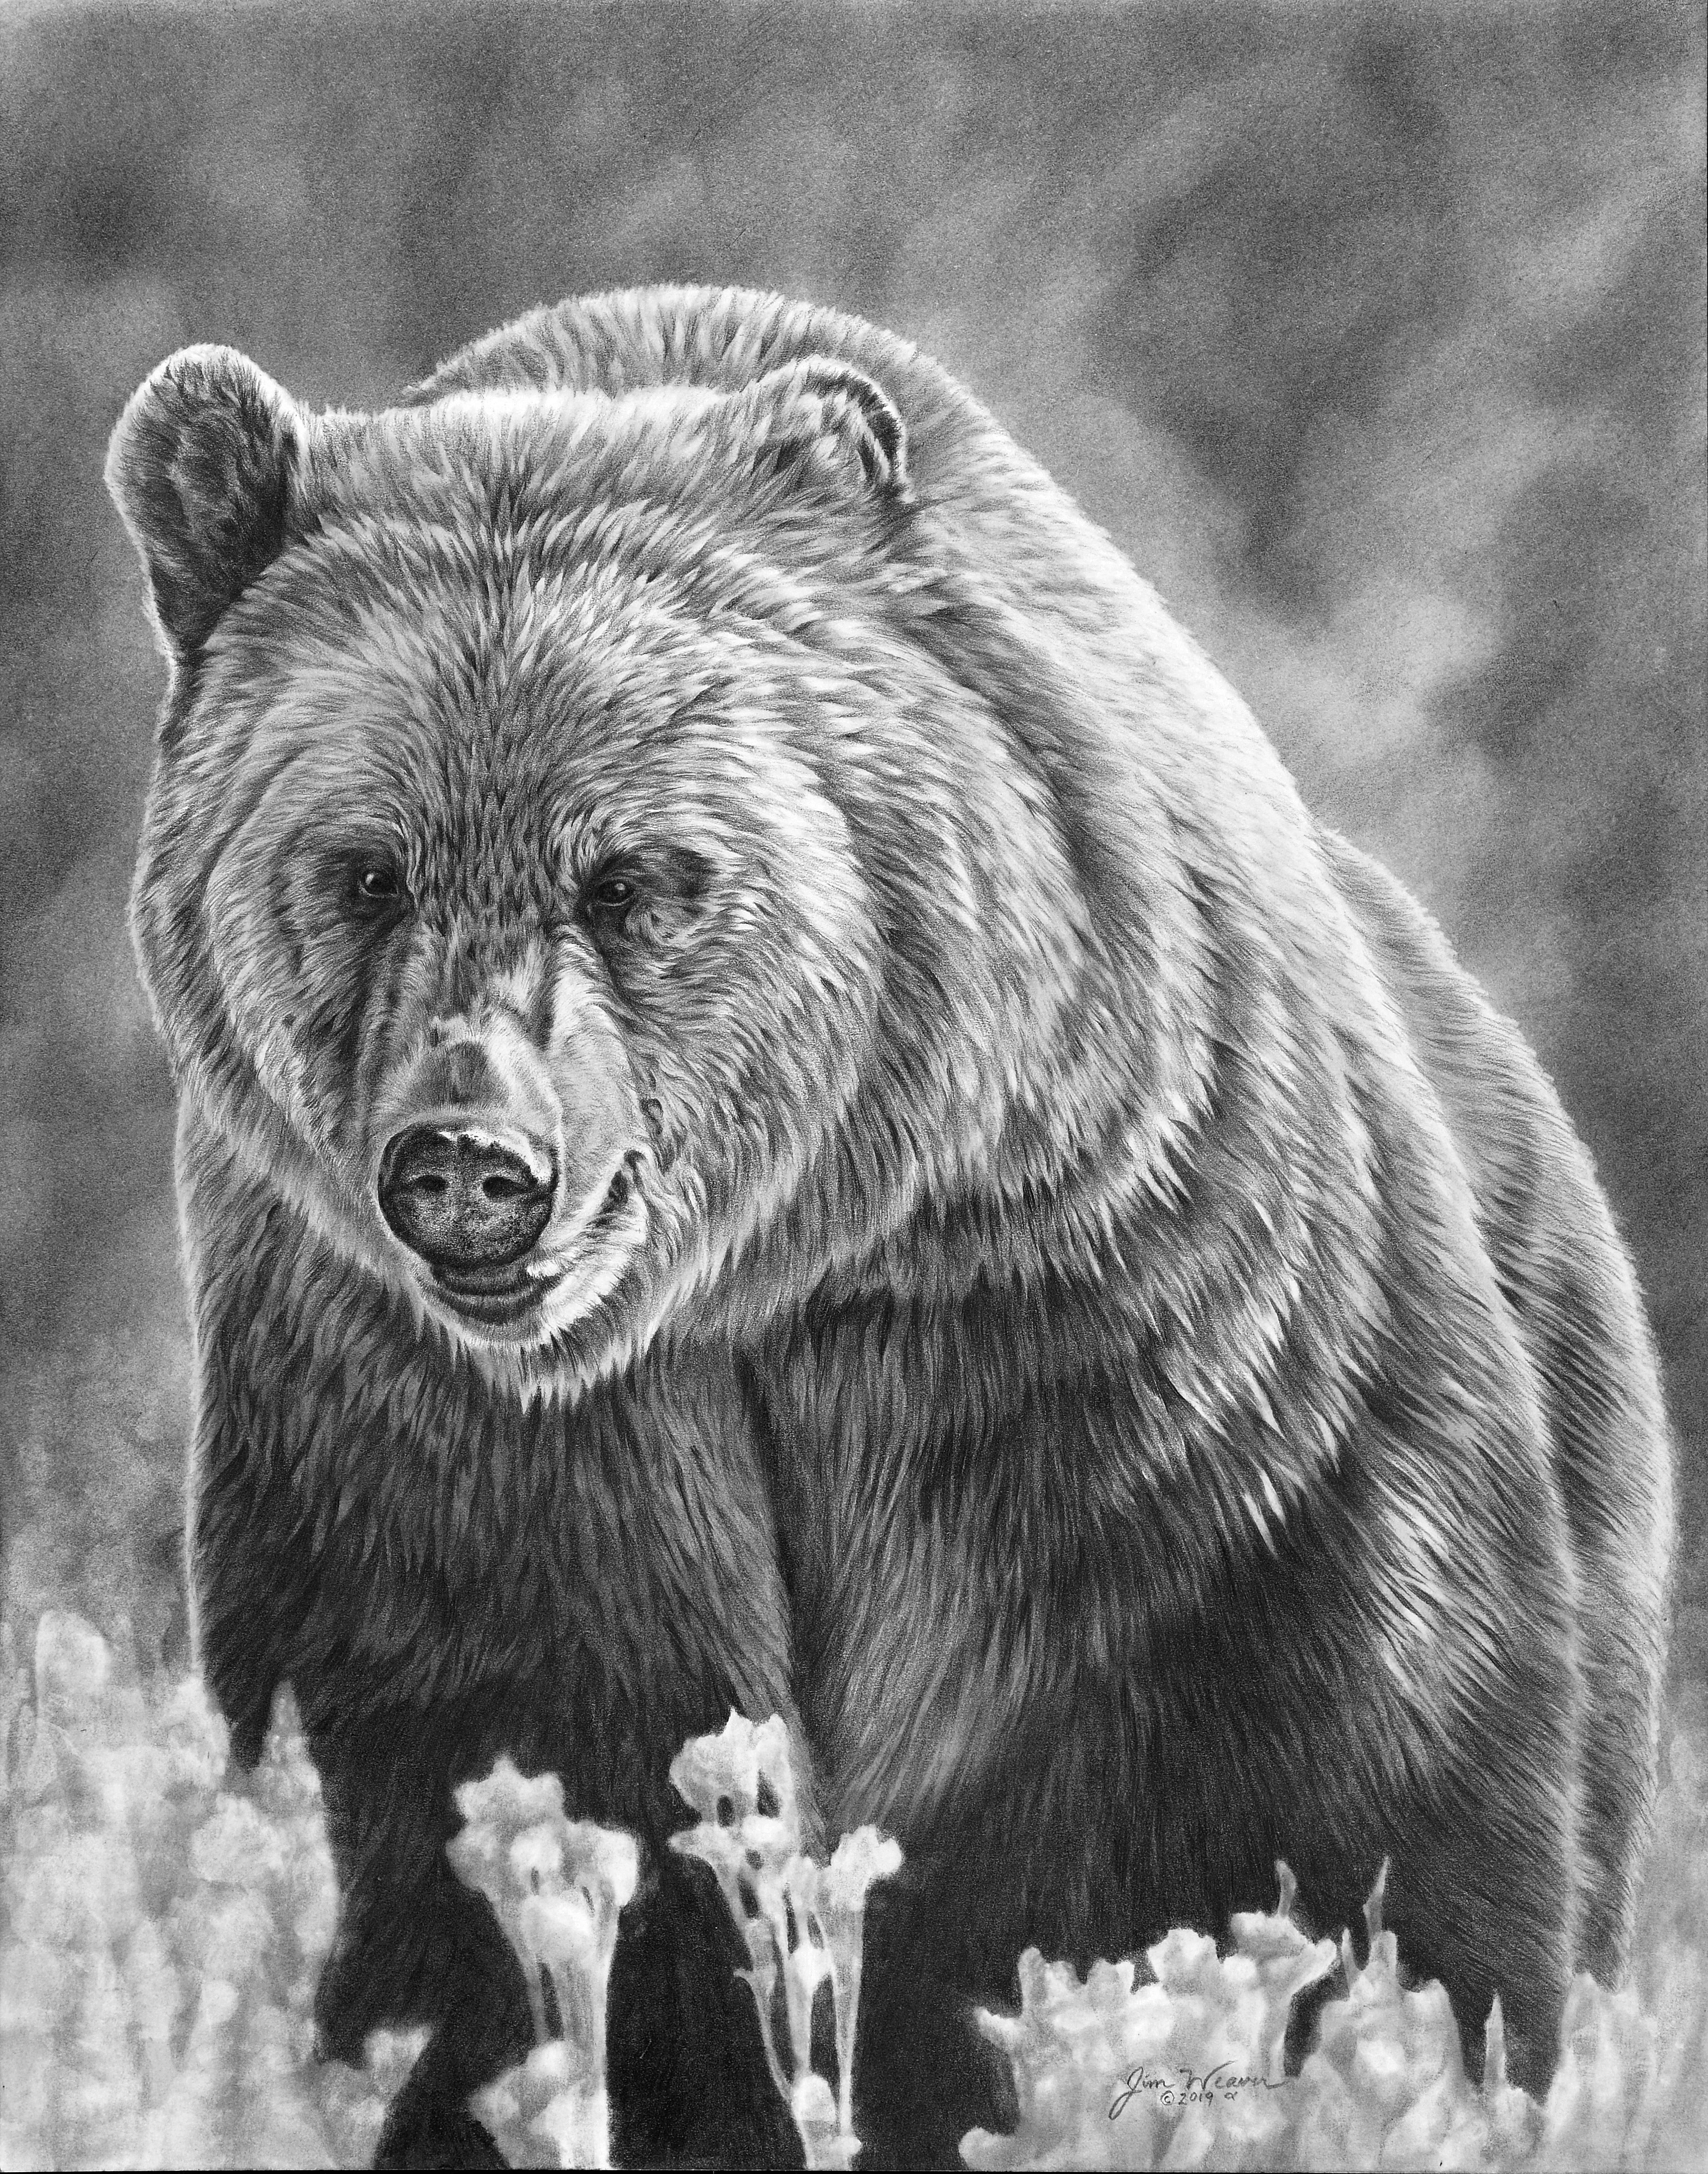 bear pencil drawing